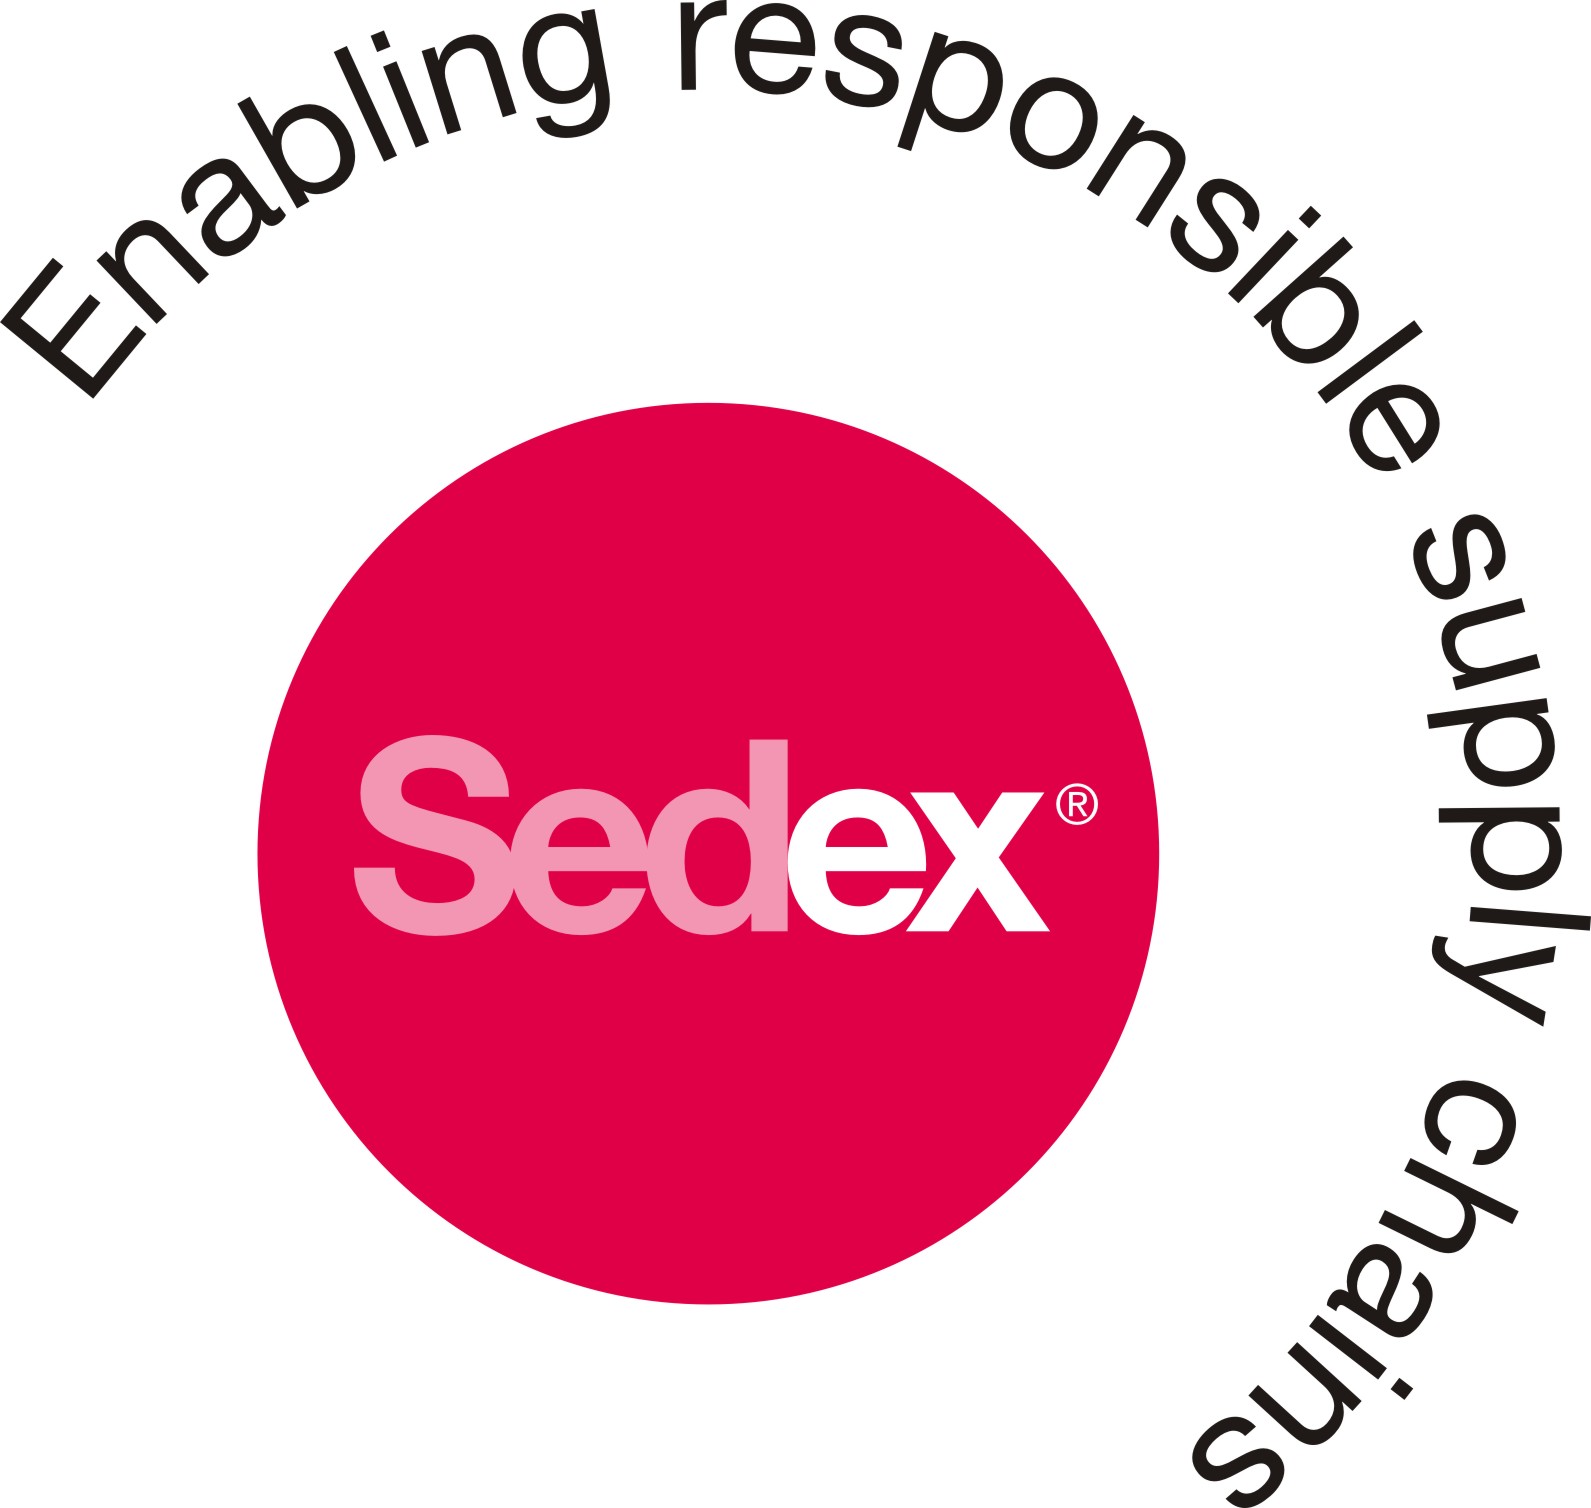 Supplier Ethical Data Exchange (SEDEX) Logo